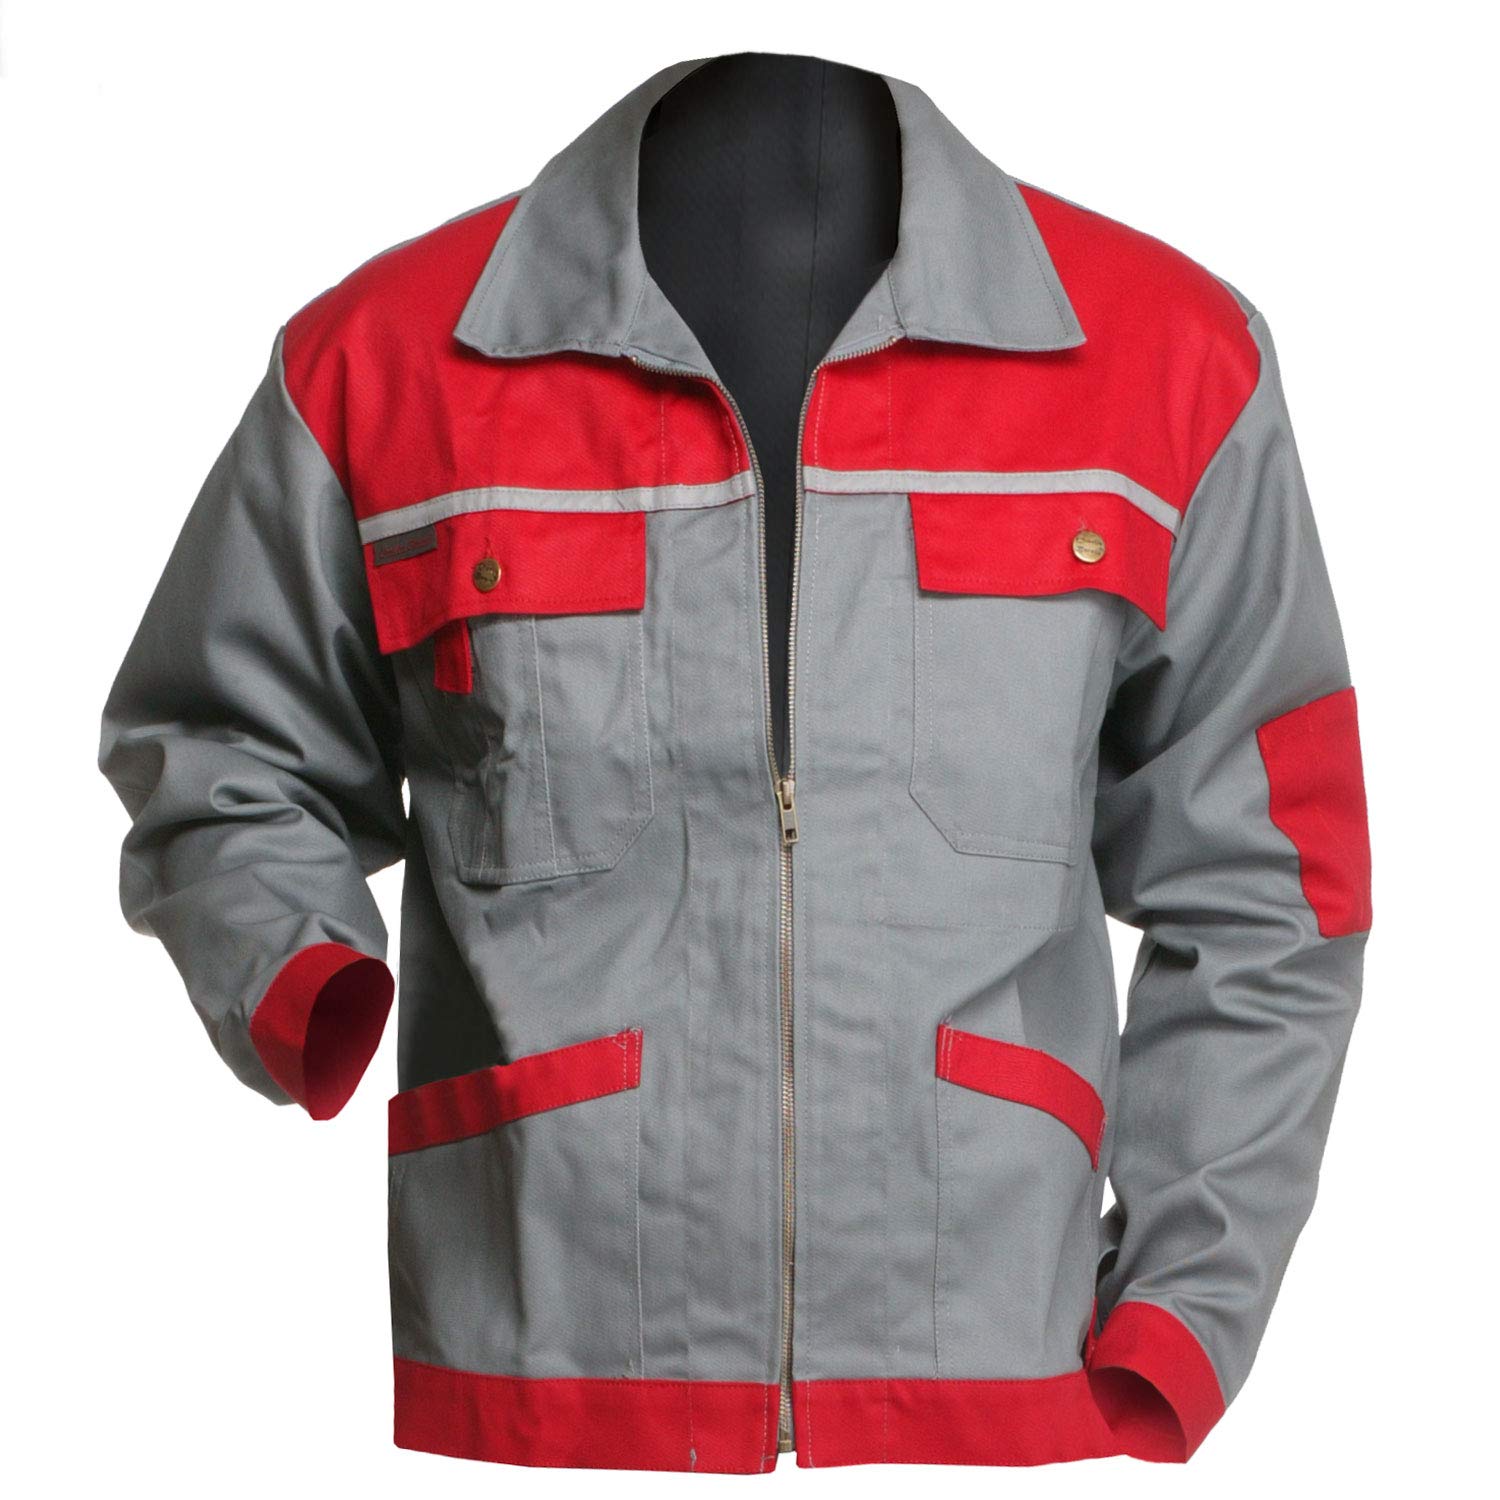 Arbeitsjacke Charlie Barato® Profi Line grau/rot - Jacke für Handwerker Größe 54